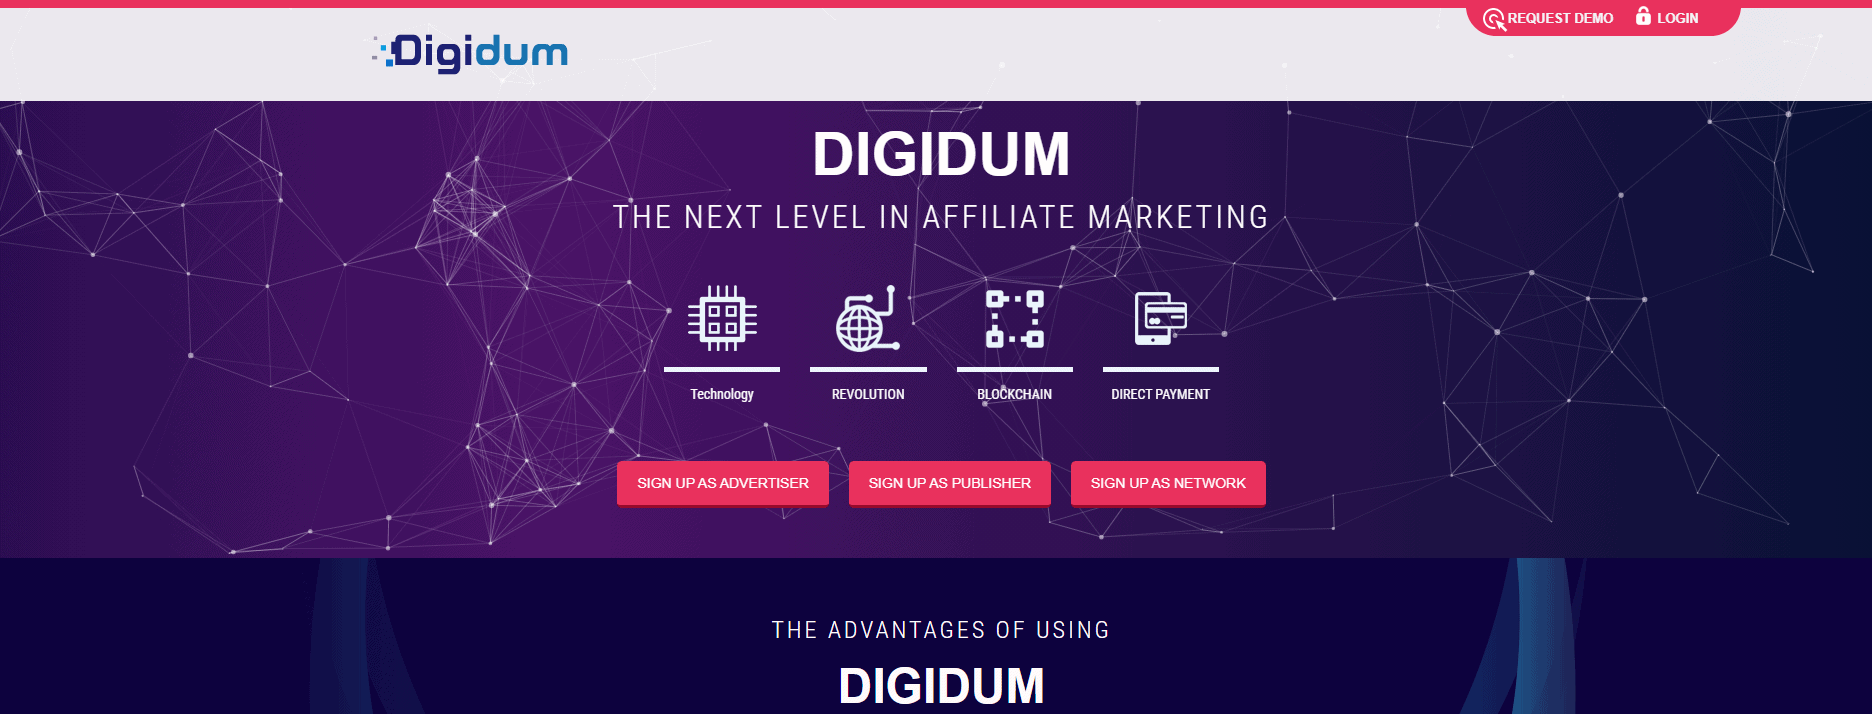 Digidum página